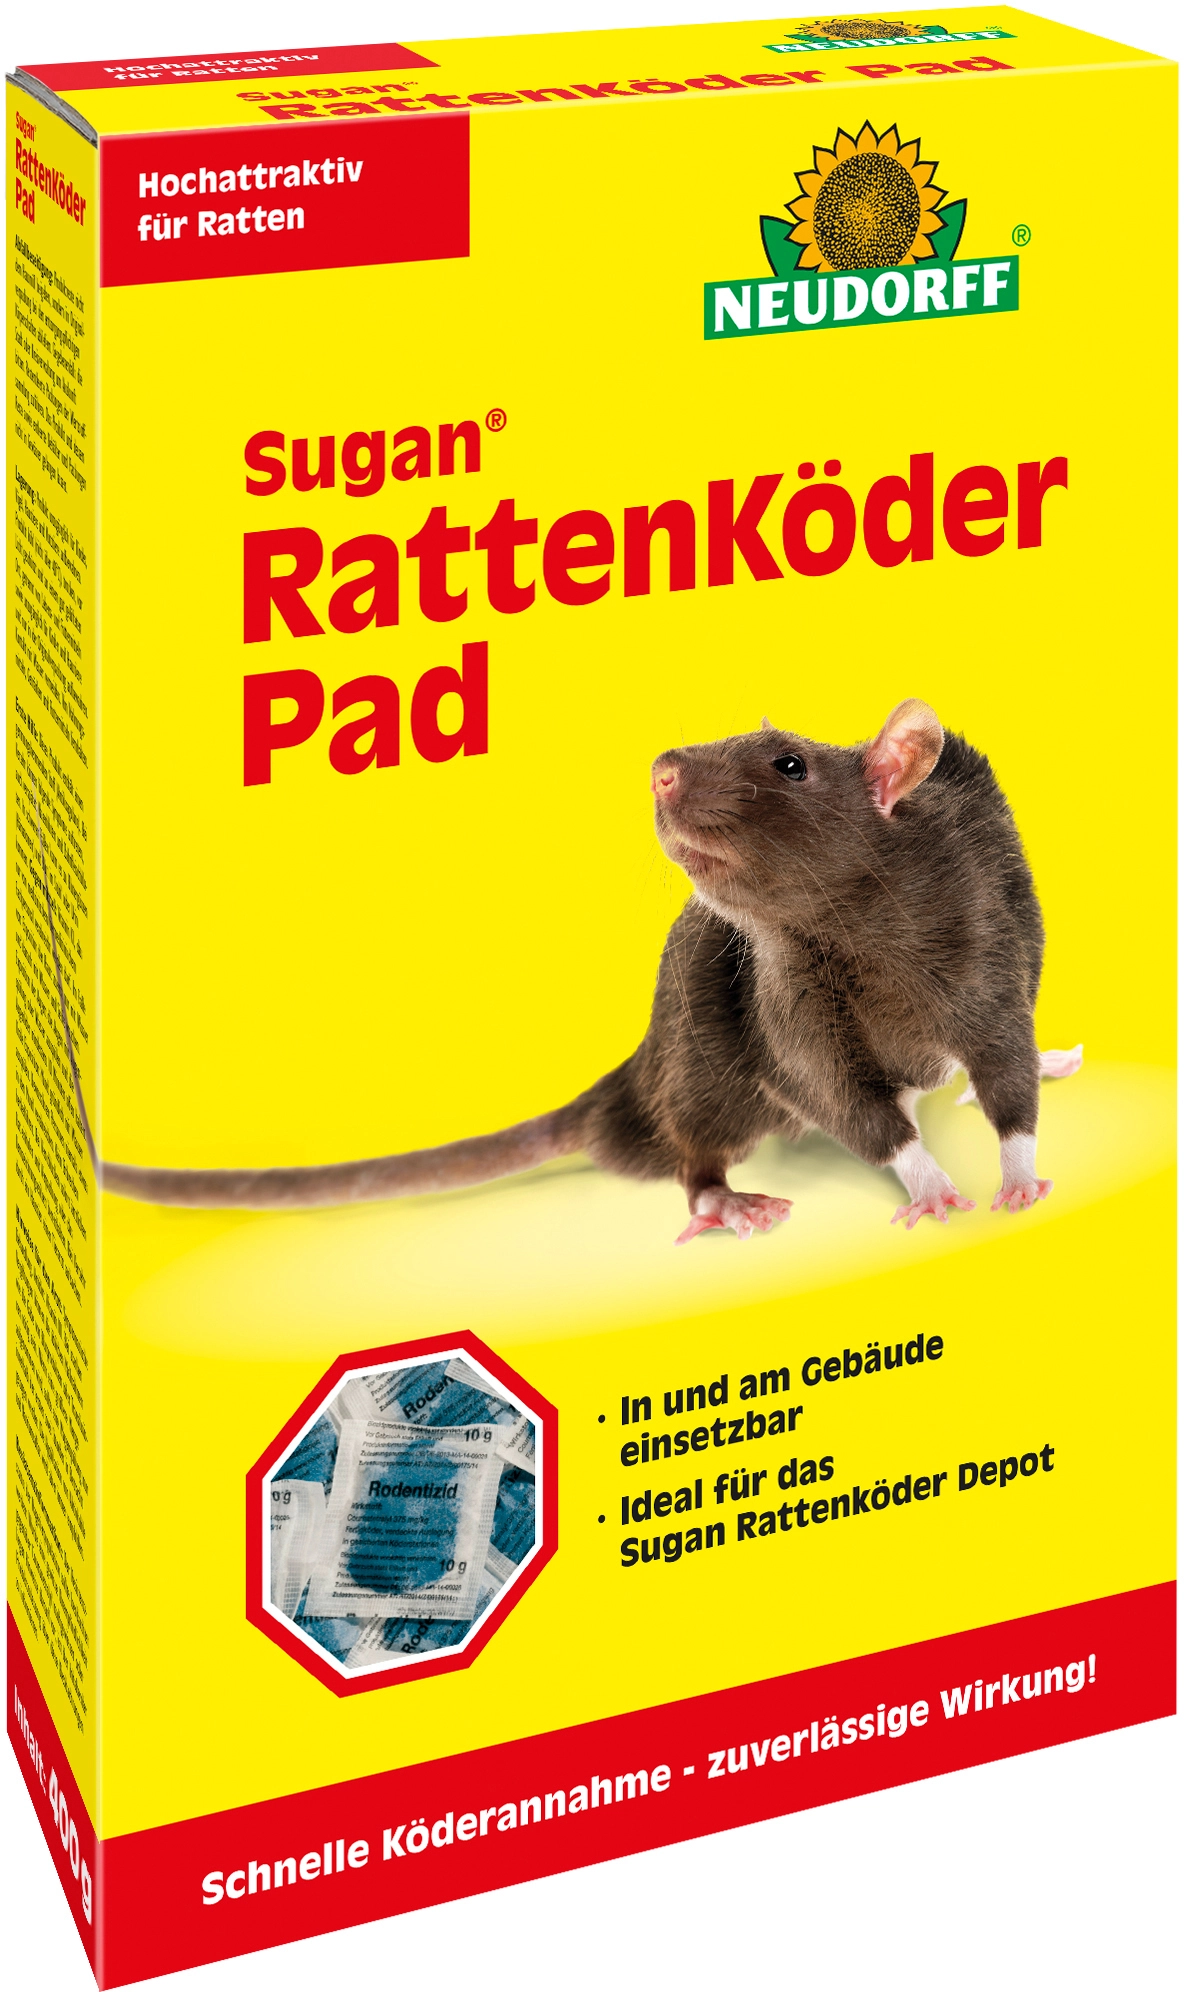 Protect Home Ratten Köderbox 1 St. günstig online kaufen